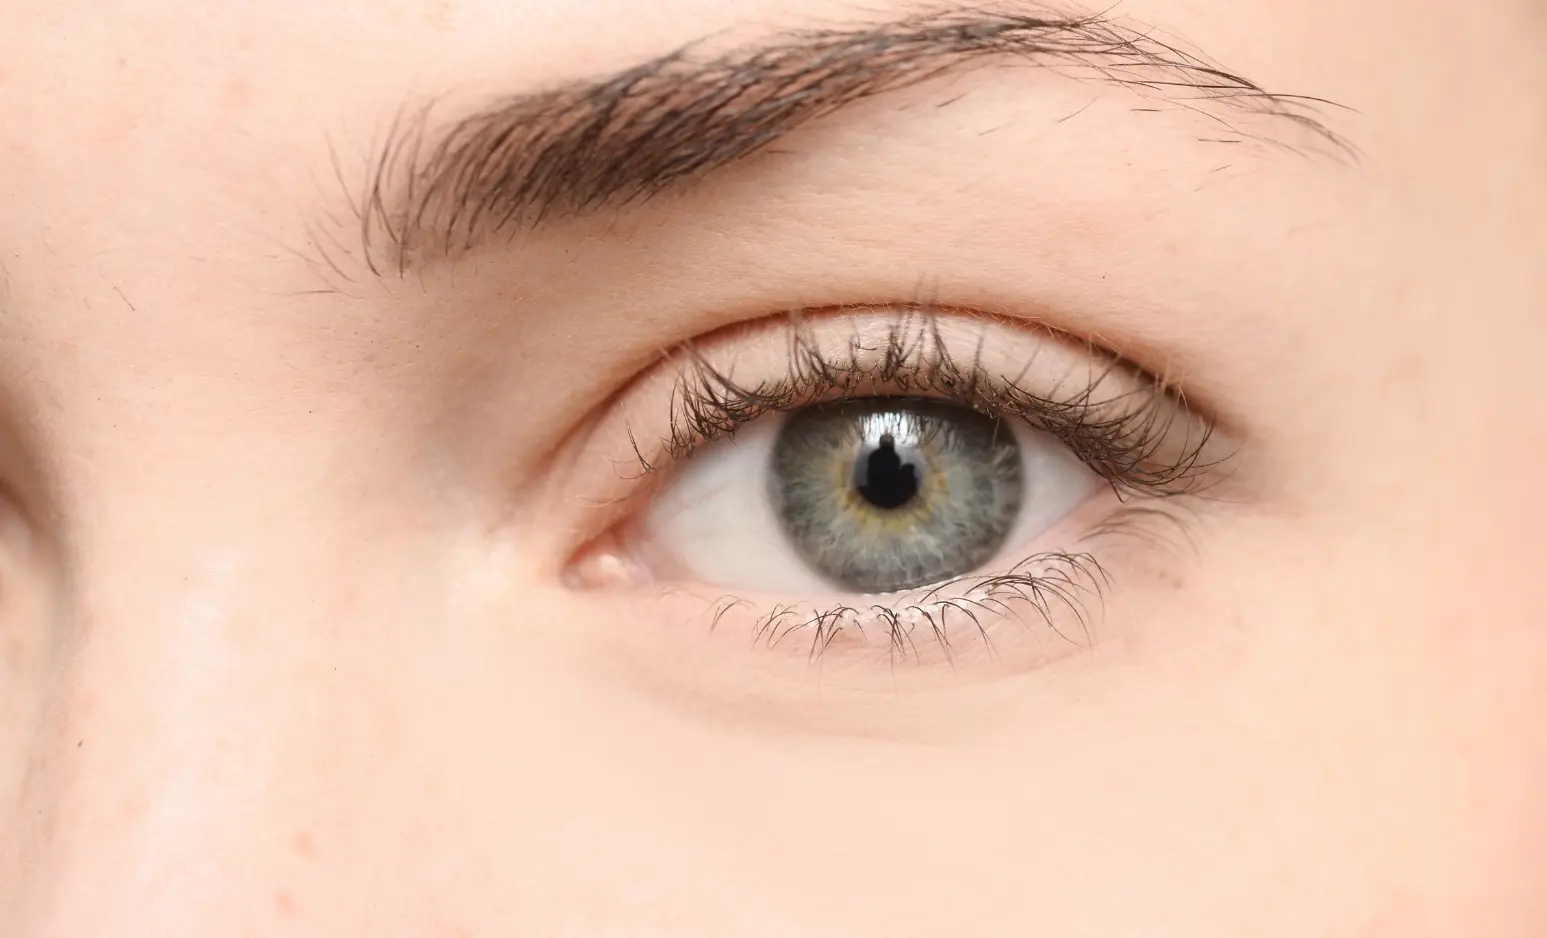 Hydrafacial perk eye